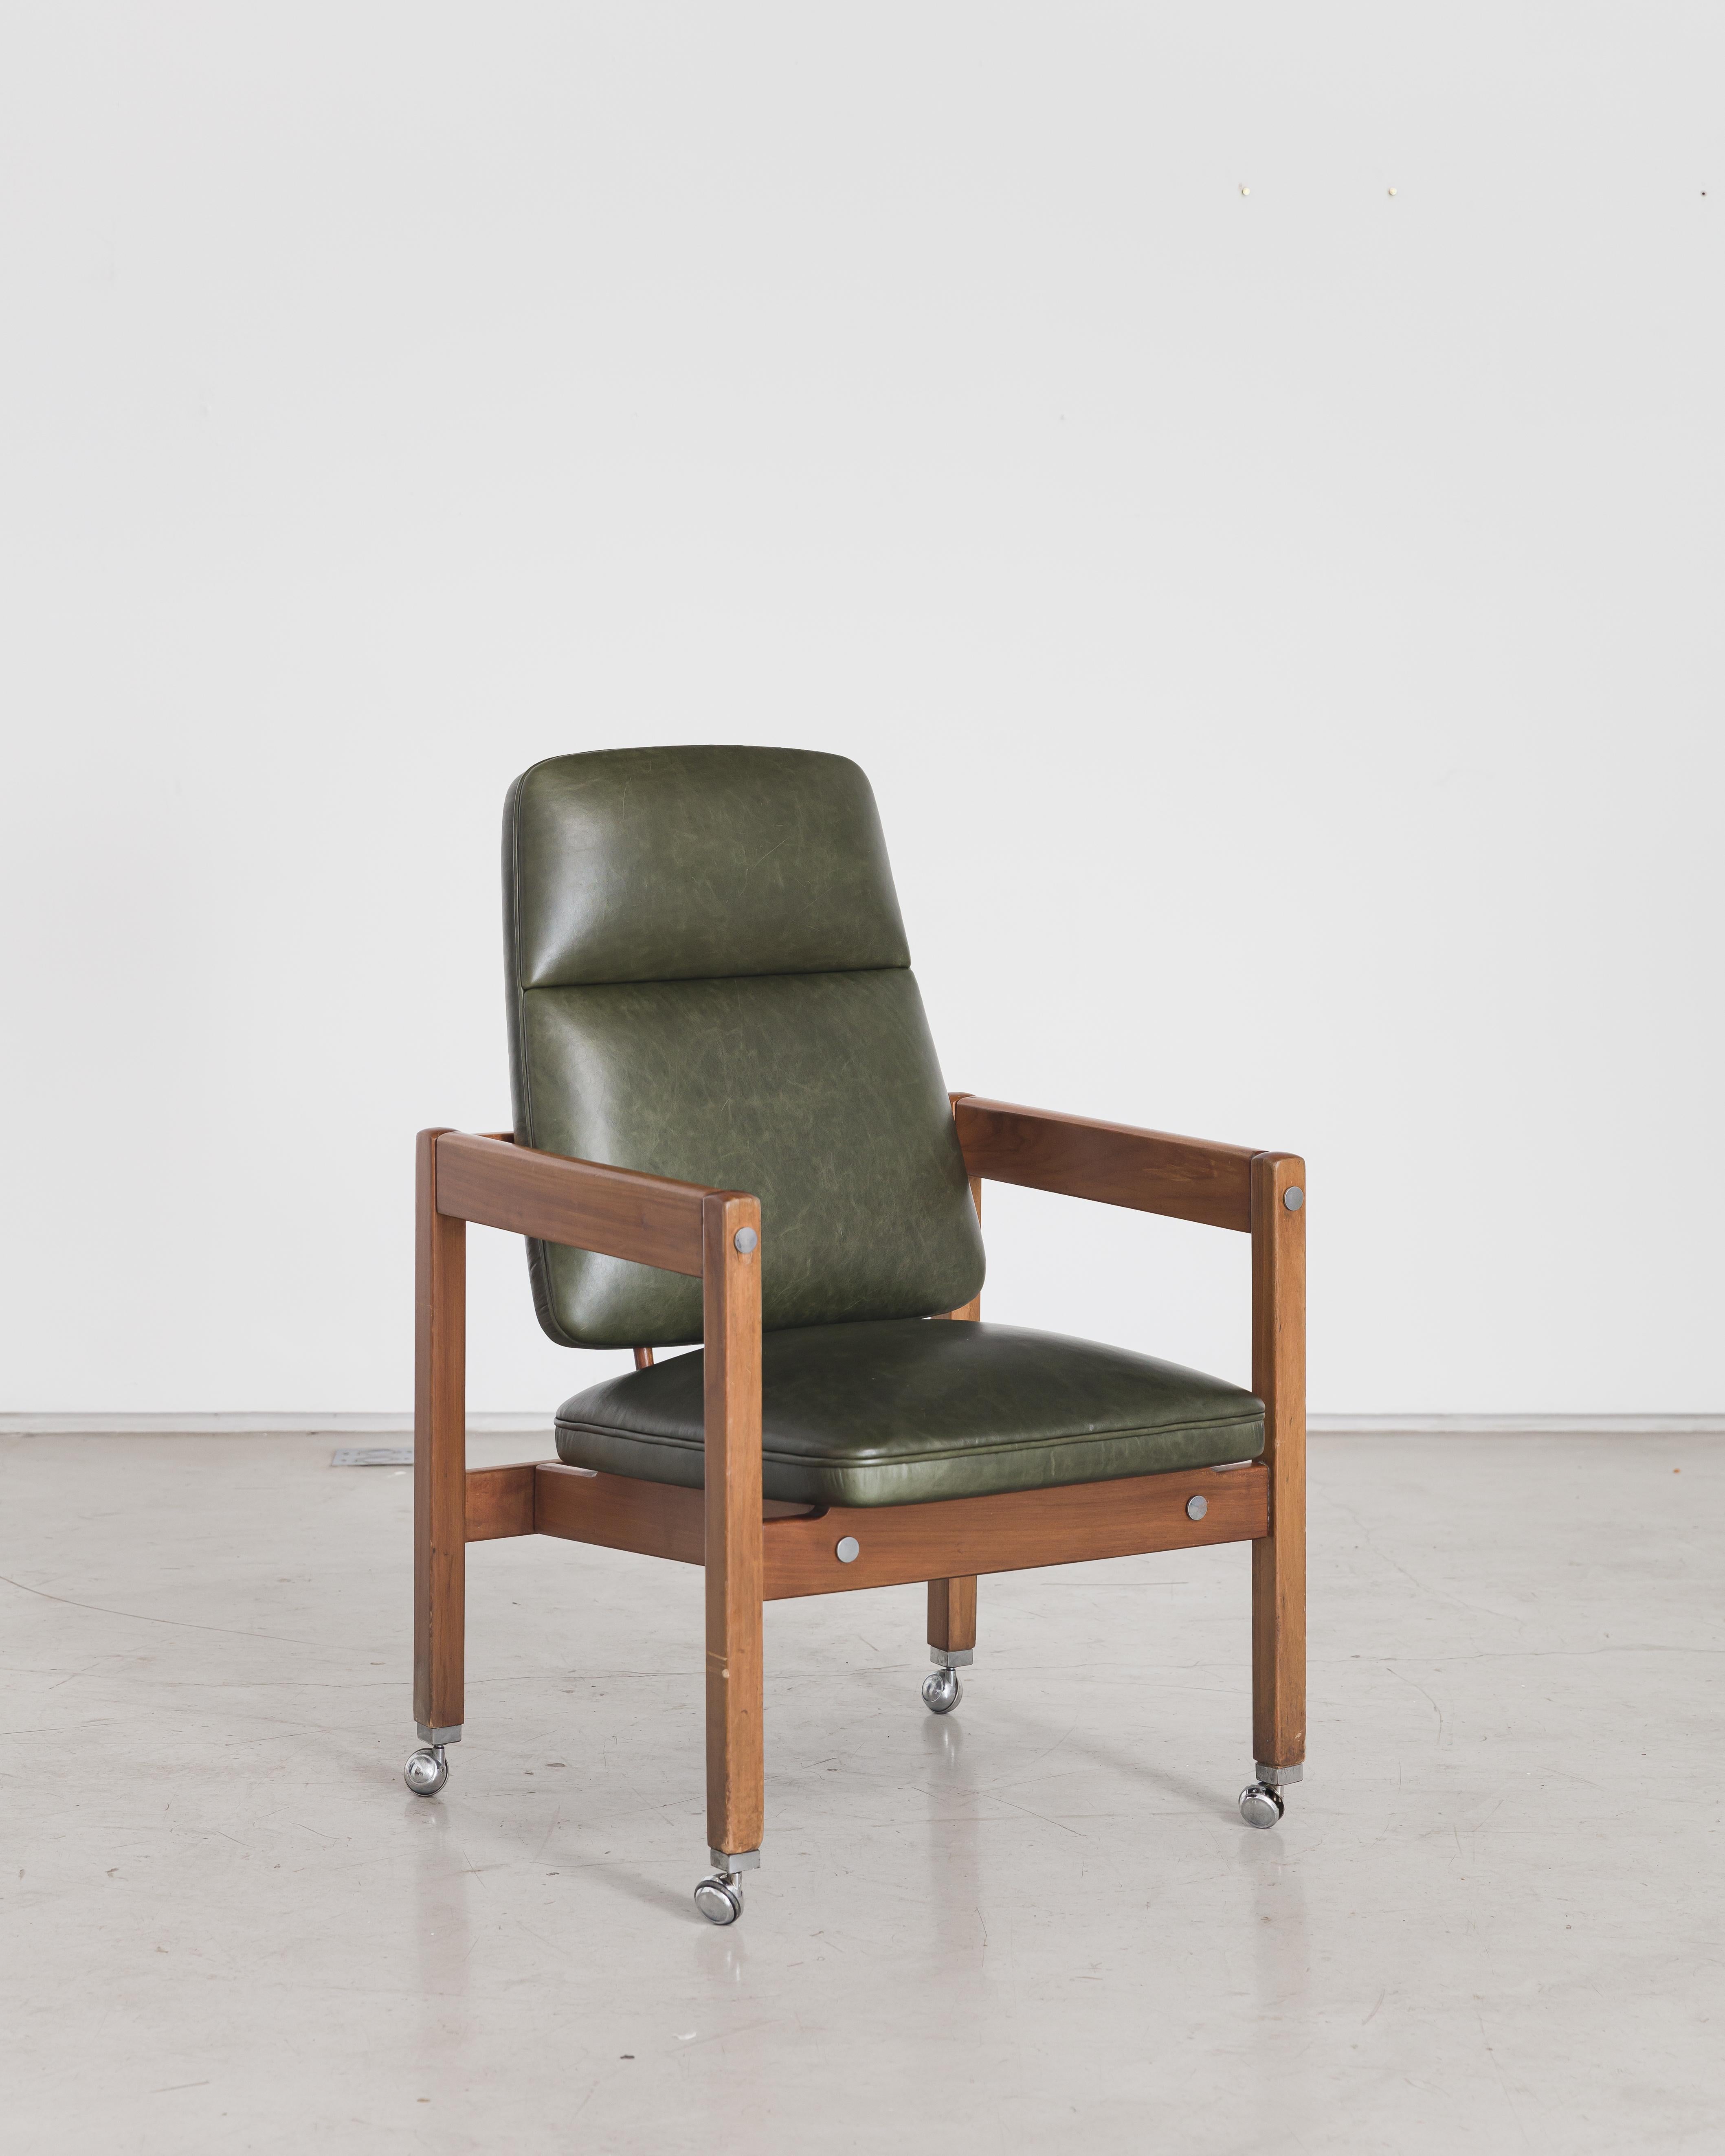 Fabriquée en bois de rose Jacarandá, cette pièce de Sergio Rodrigues est originellement tapissée de cuir vert, avec des accents circulaires chromés et des roulettes chromées. Cette chaise a été créée pour meubler le bâtiment Palacio dos Arcos,